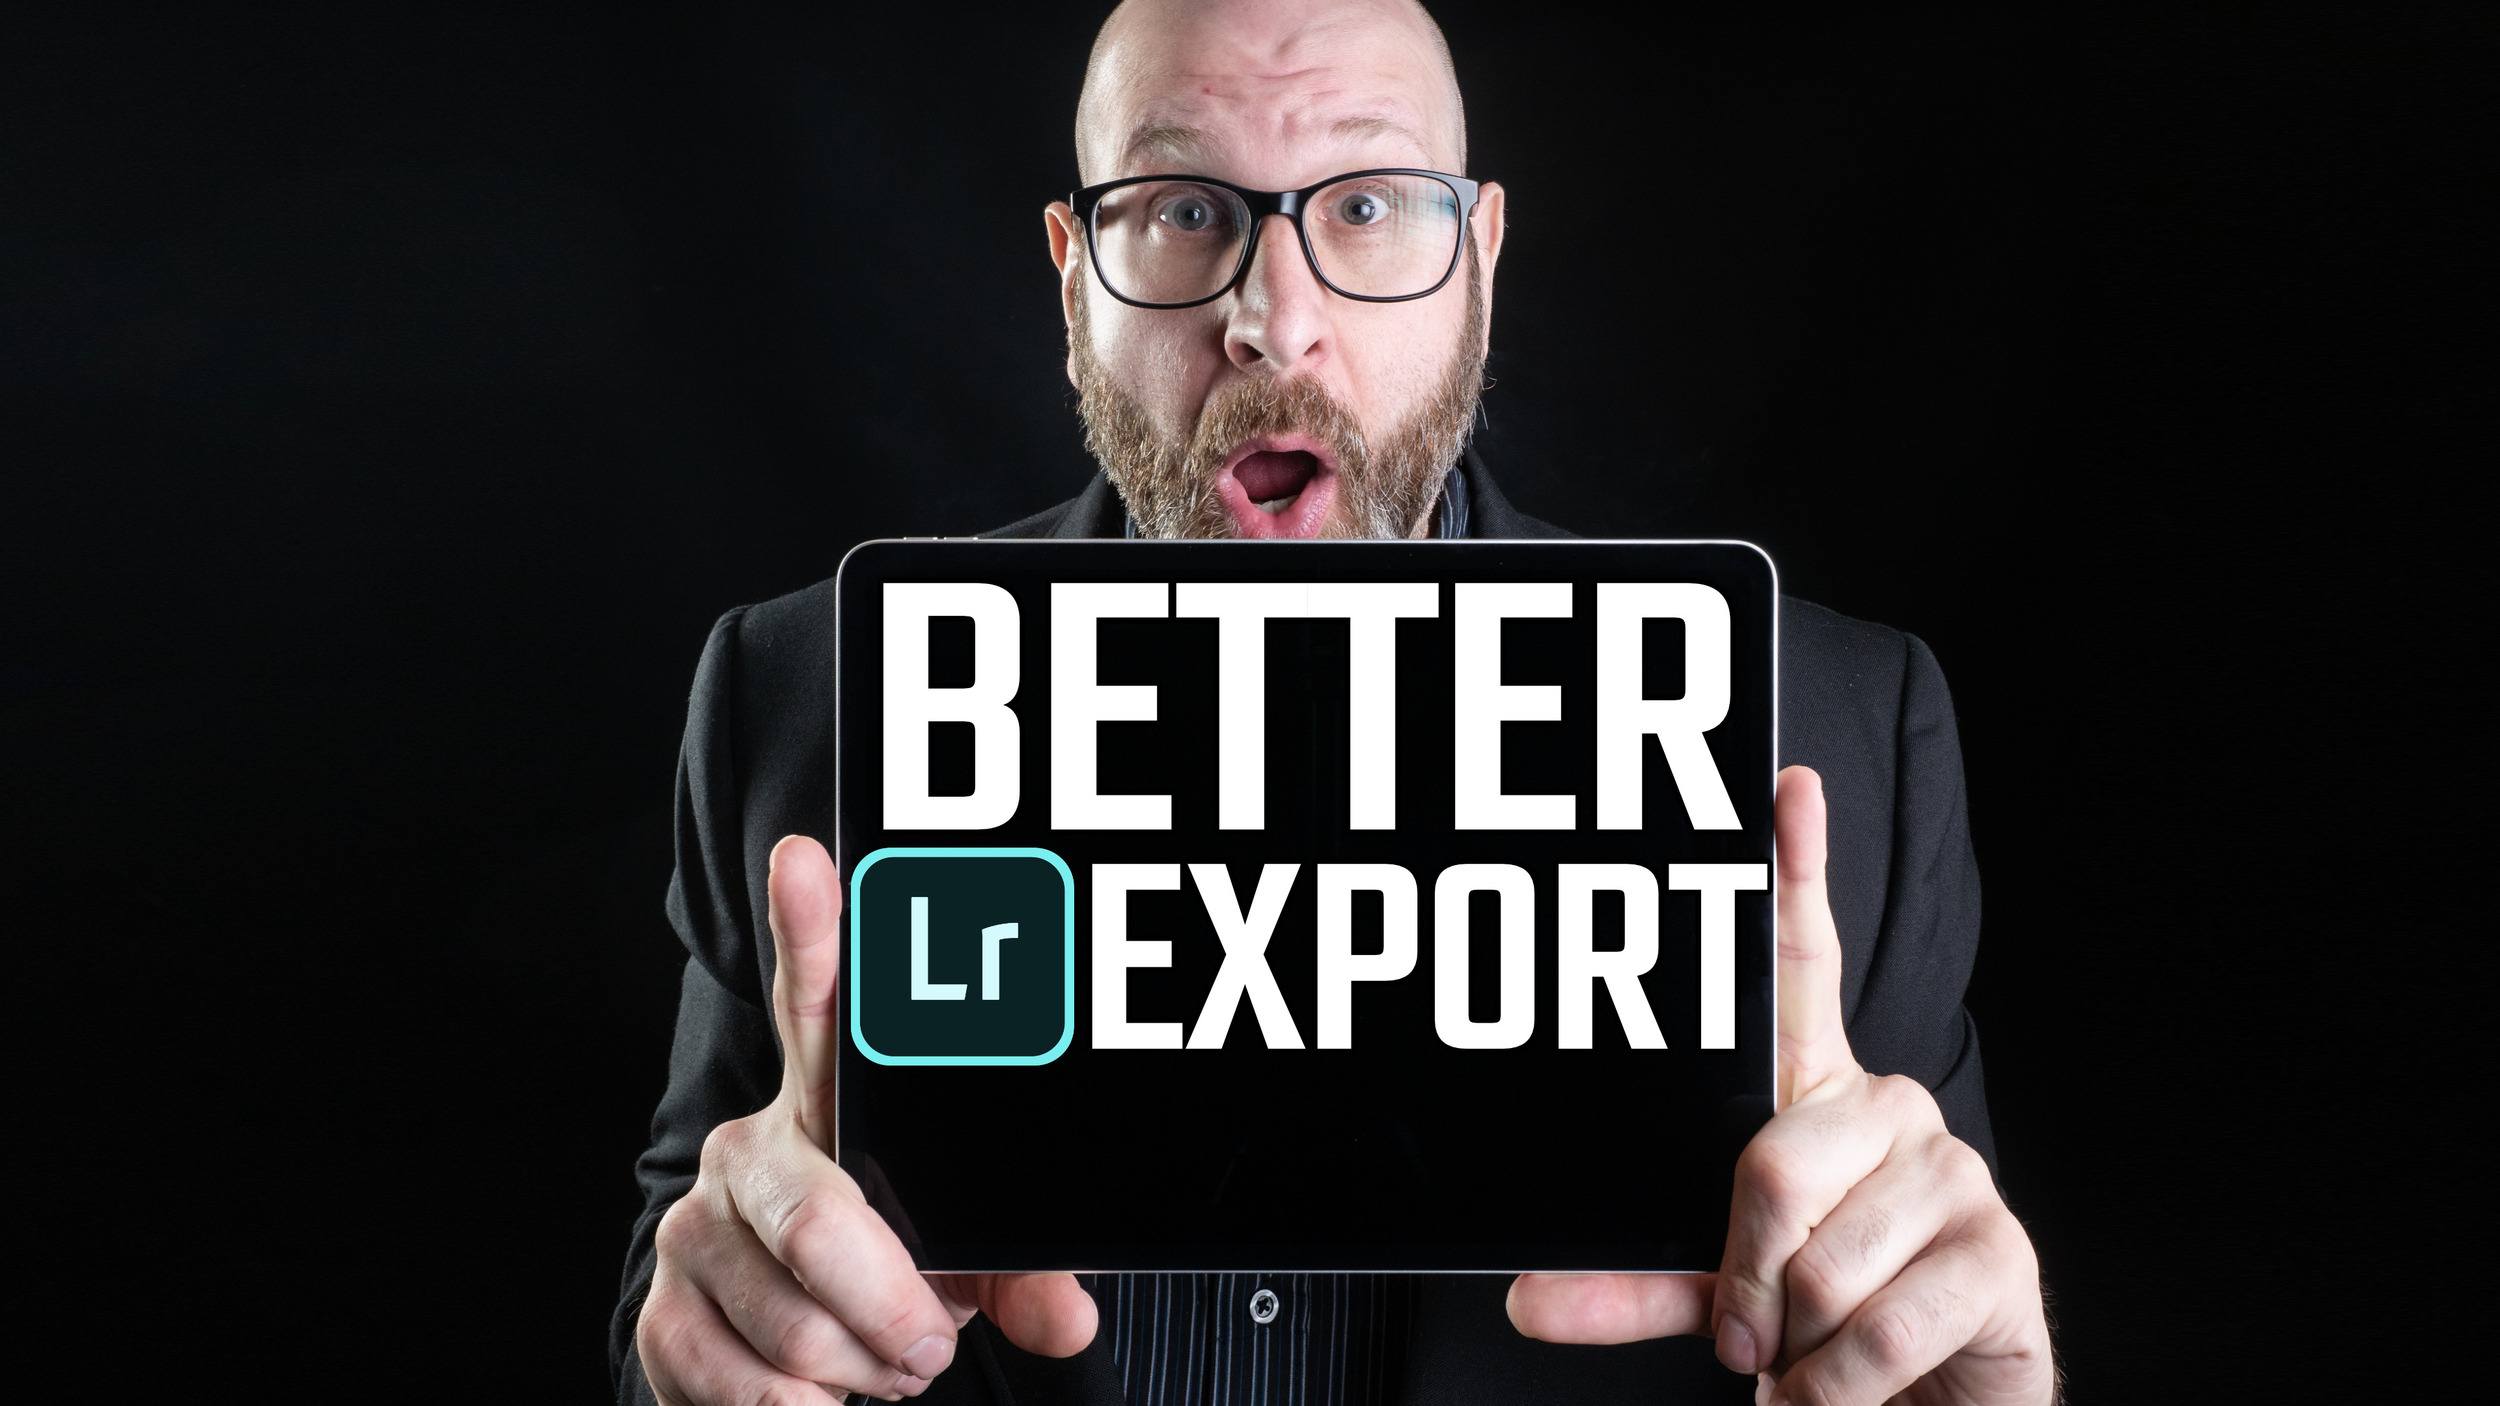 Lightroom iPad Export Sucks! Here’s How To Do It Better